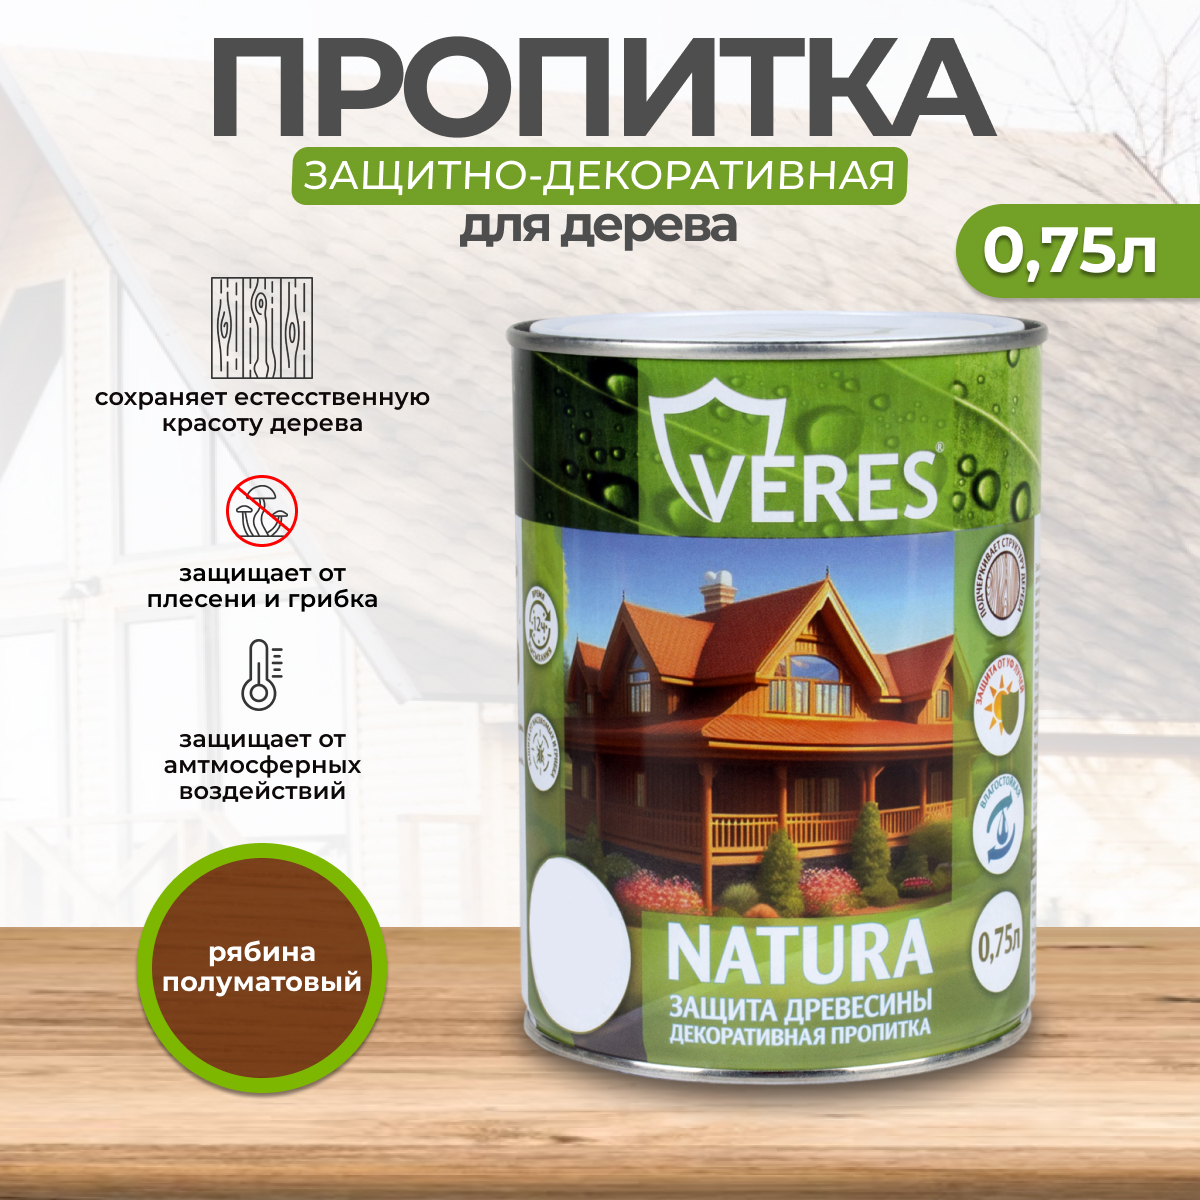 Декоративная пропитка для дерева Veres Natura полуматовая 0 75 л рябина, VR-122